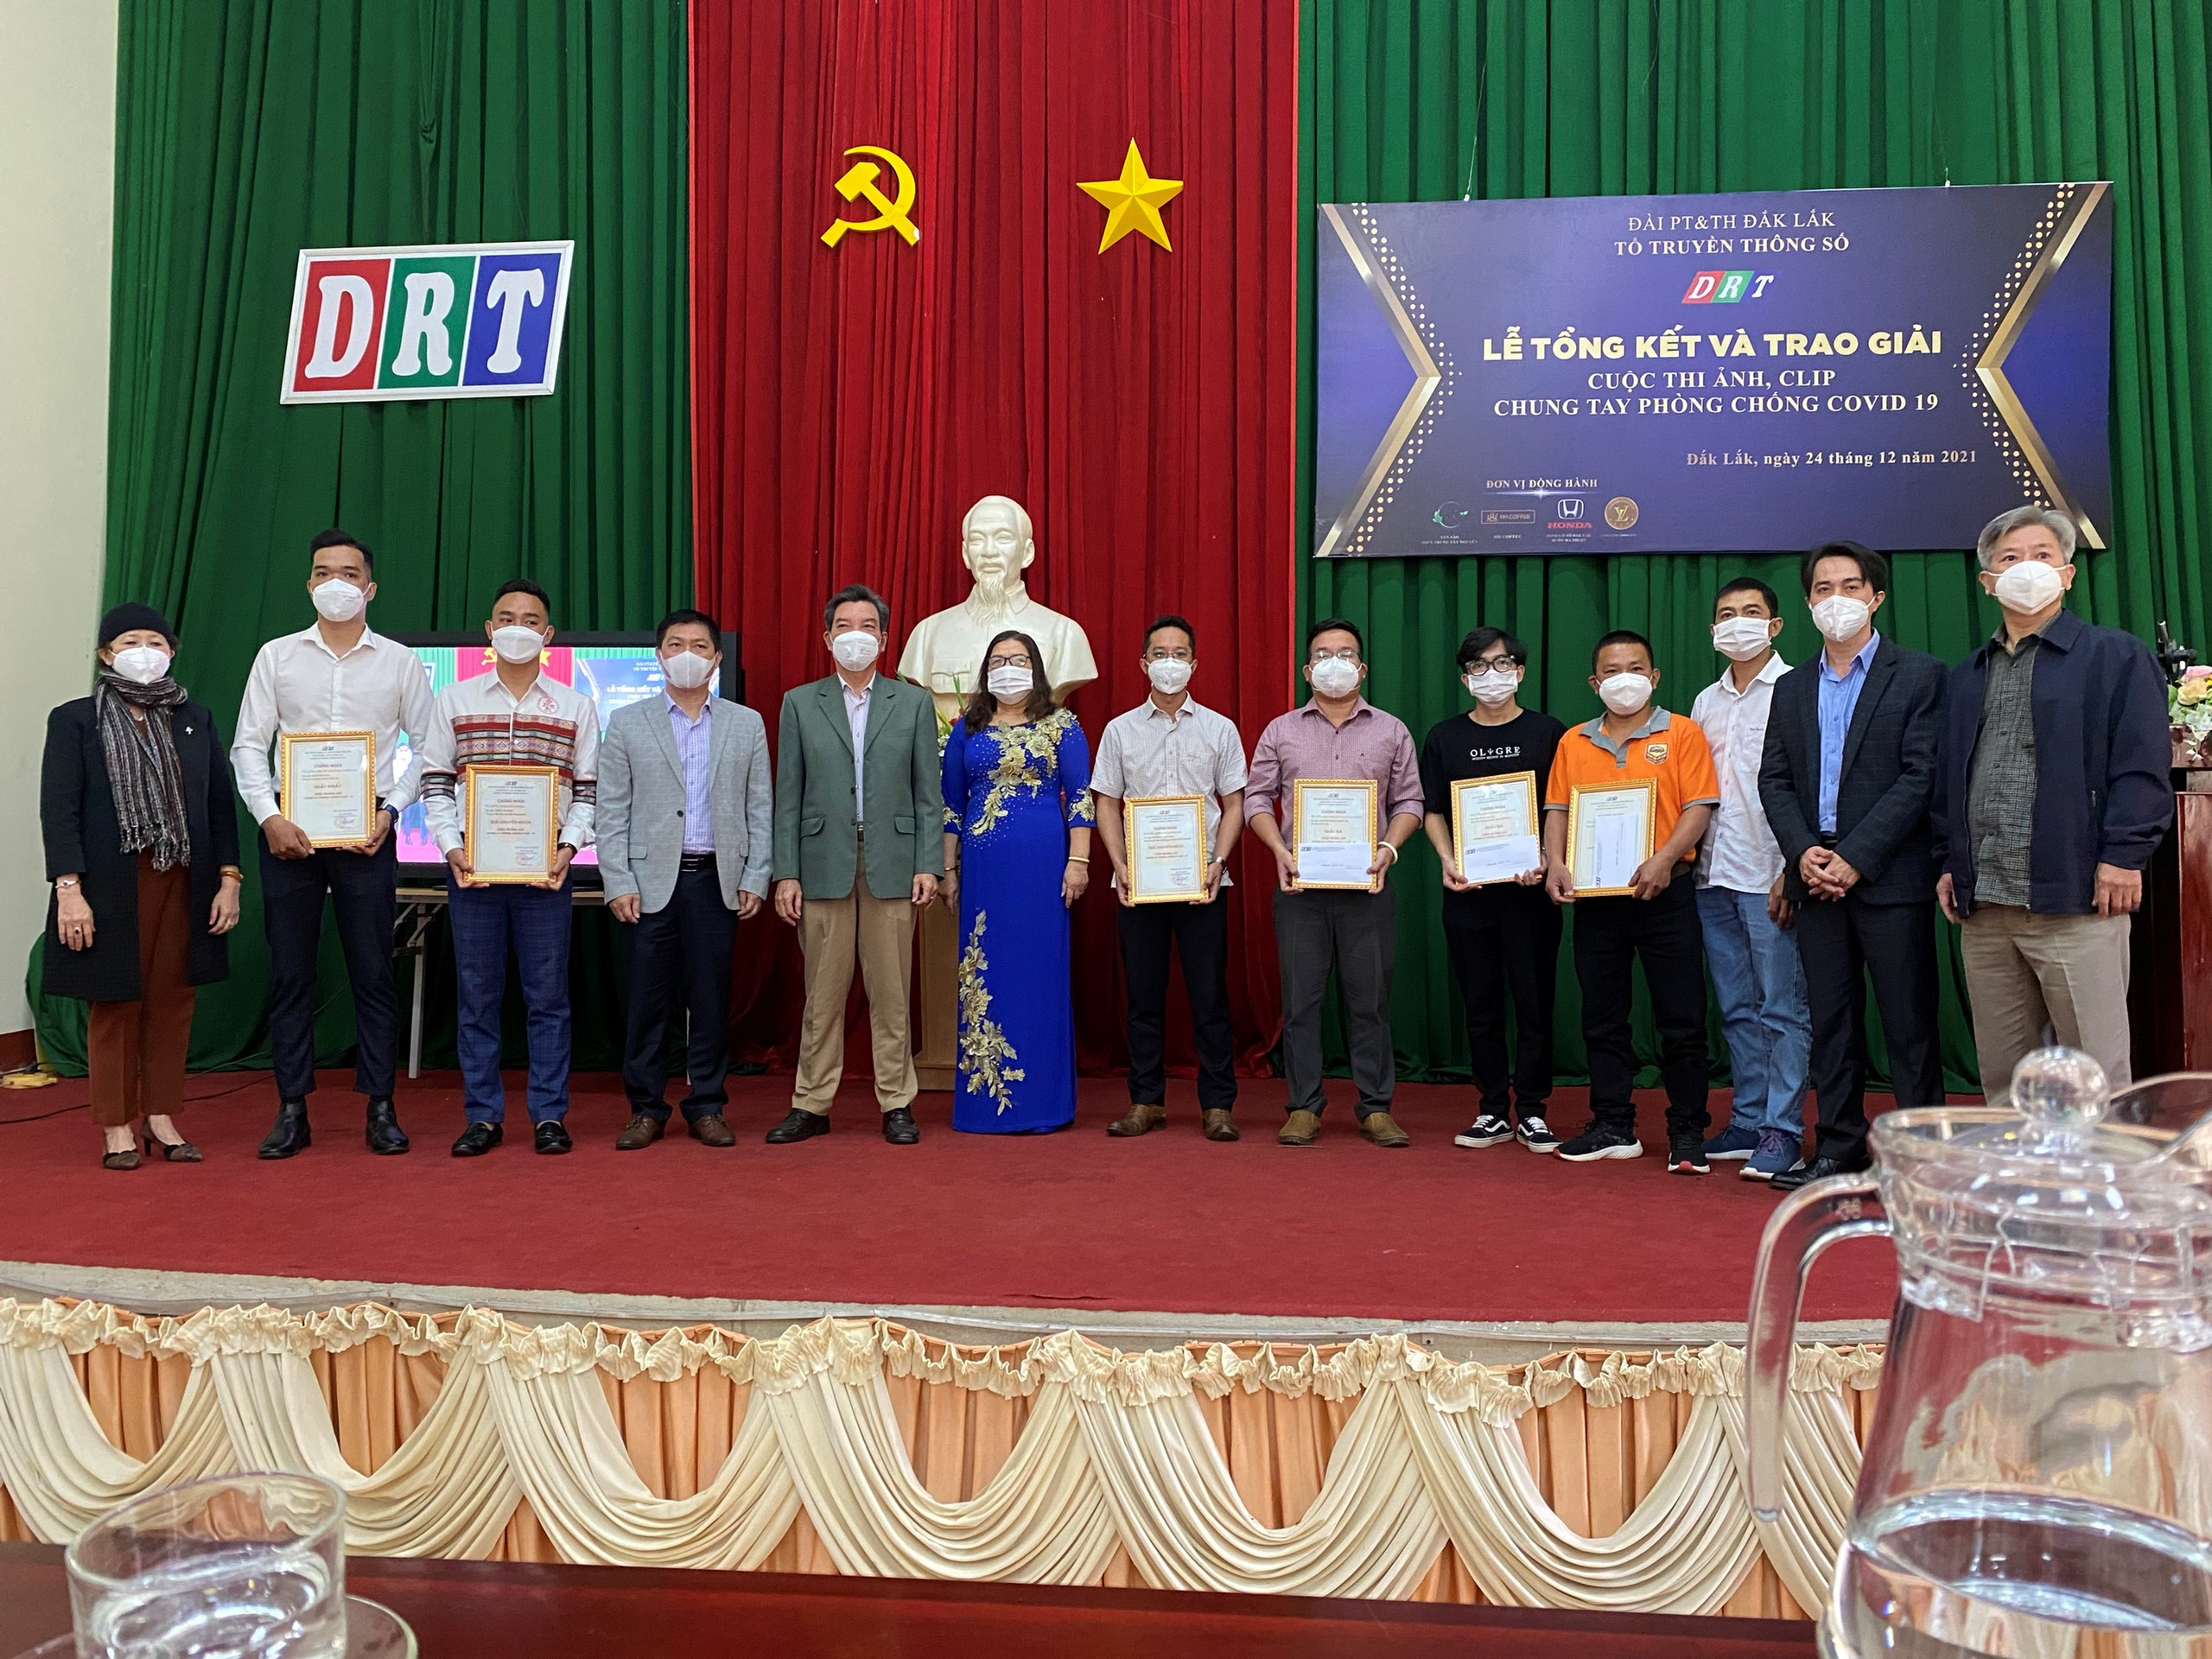 Đài PTTH Đắk Lắk tổ chức Lễ tổng kết và trao giải Cuộc thi ảnh, clip chung tay phòng chống dịch Covid-19